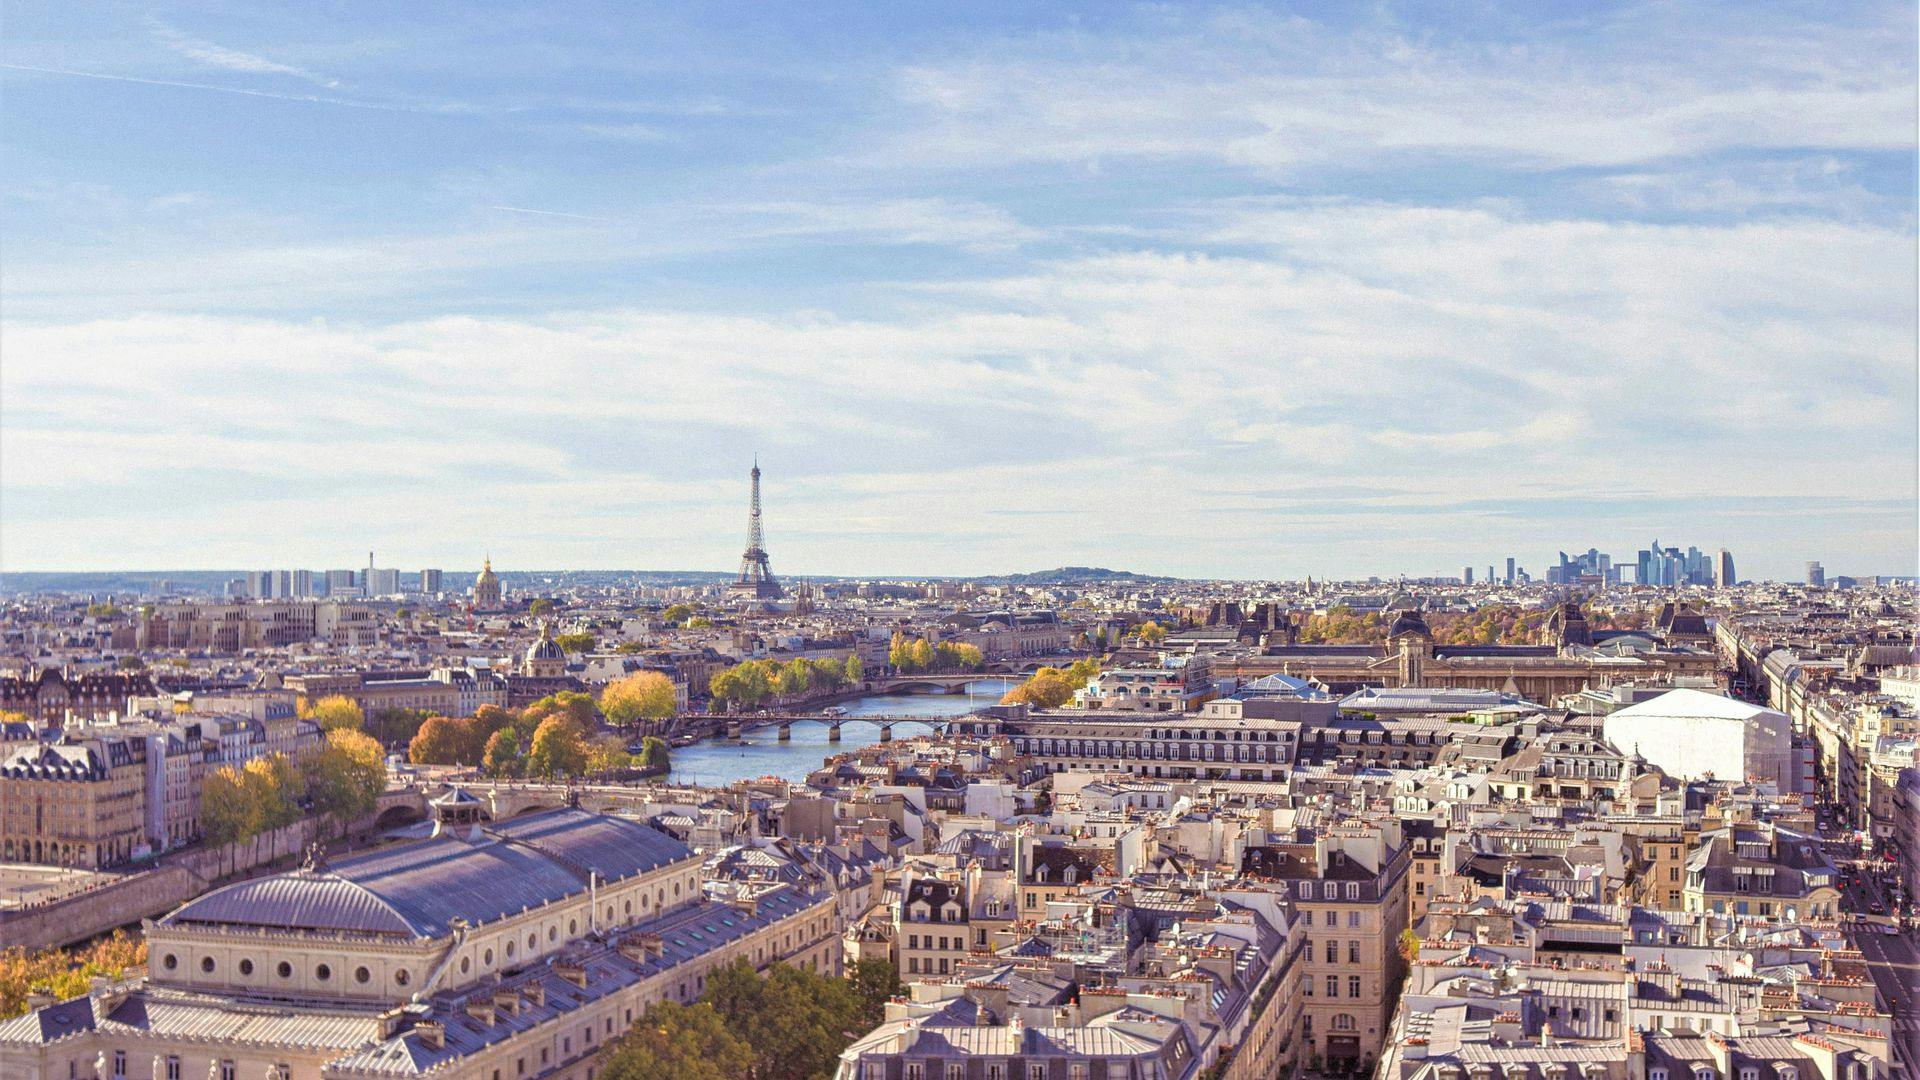 Descobrindo Paris: tour a pé por áudio ao longo do Rio Sena